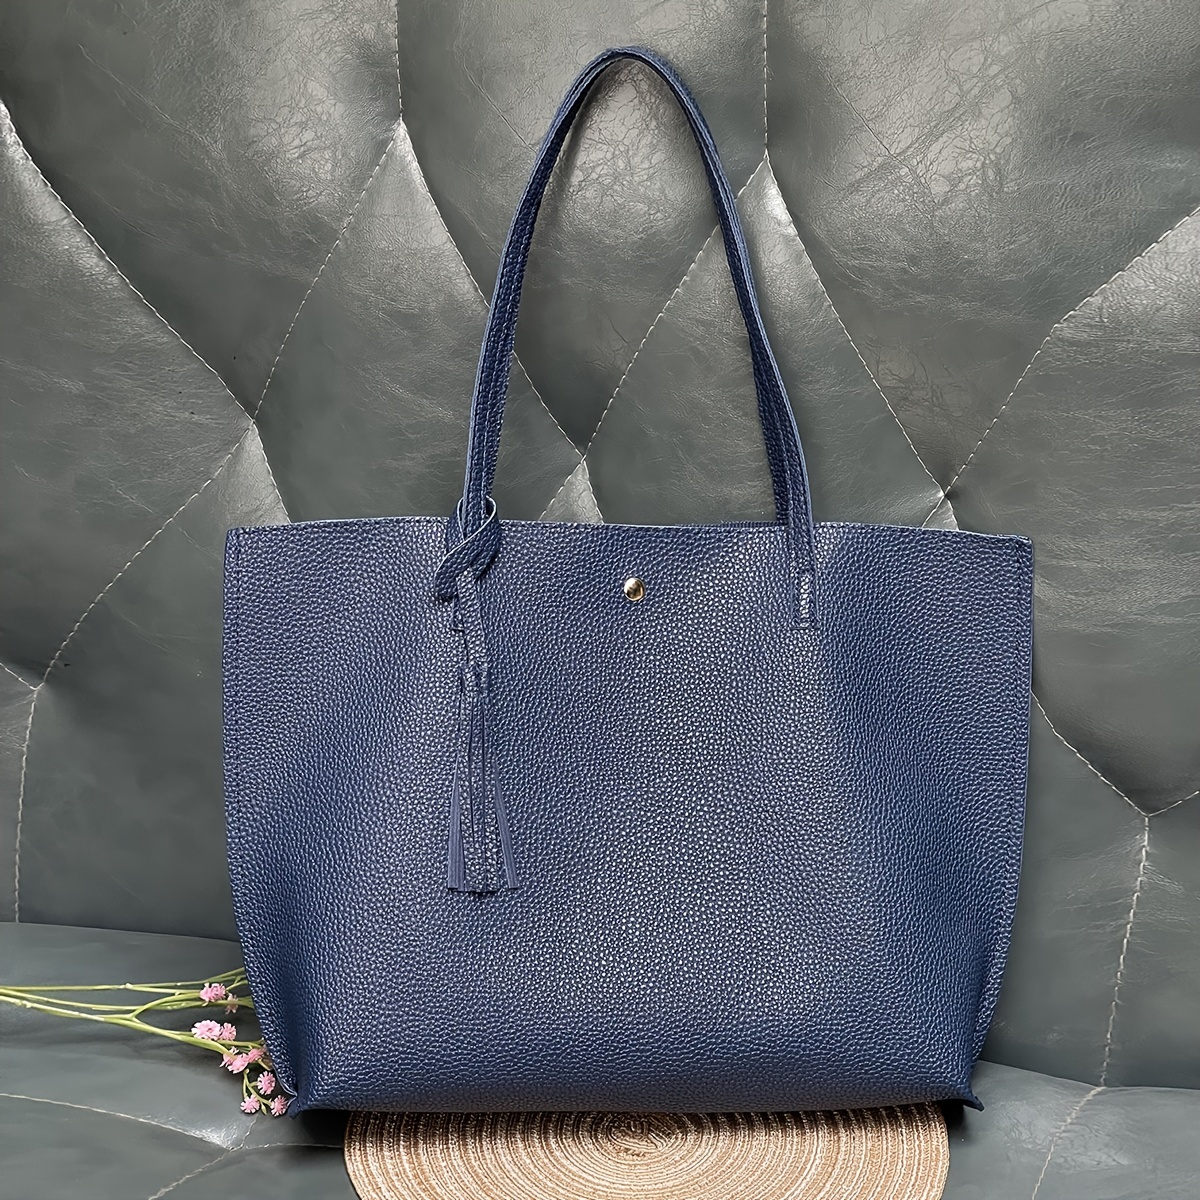 Large Work Tote Bag Handbag Women Bags High Messenger Satchel Shoulder  Solid Leather Tassels for Handbags